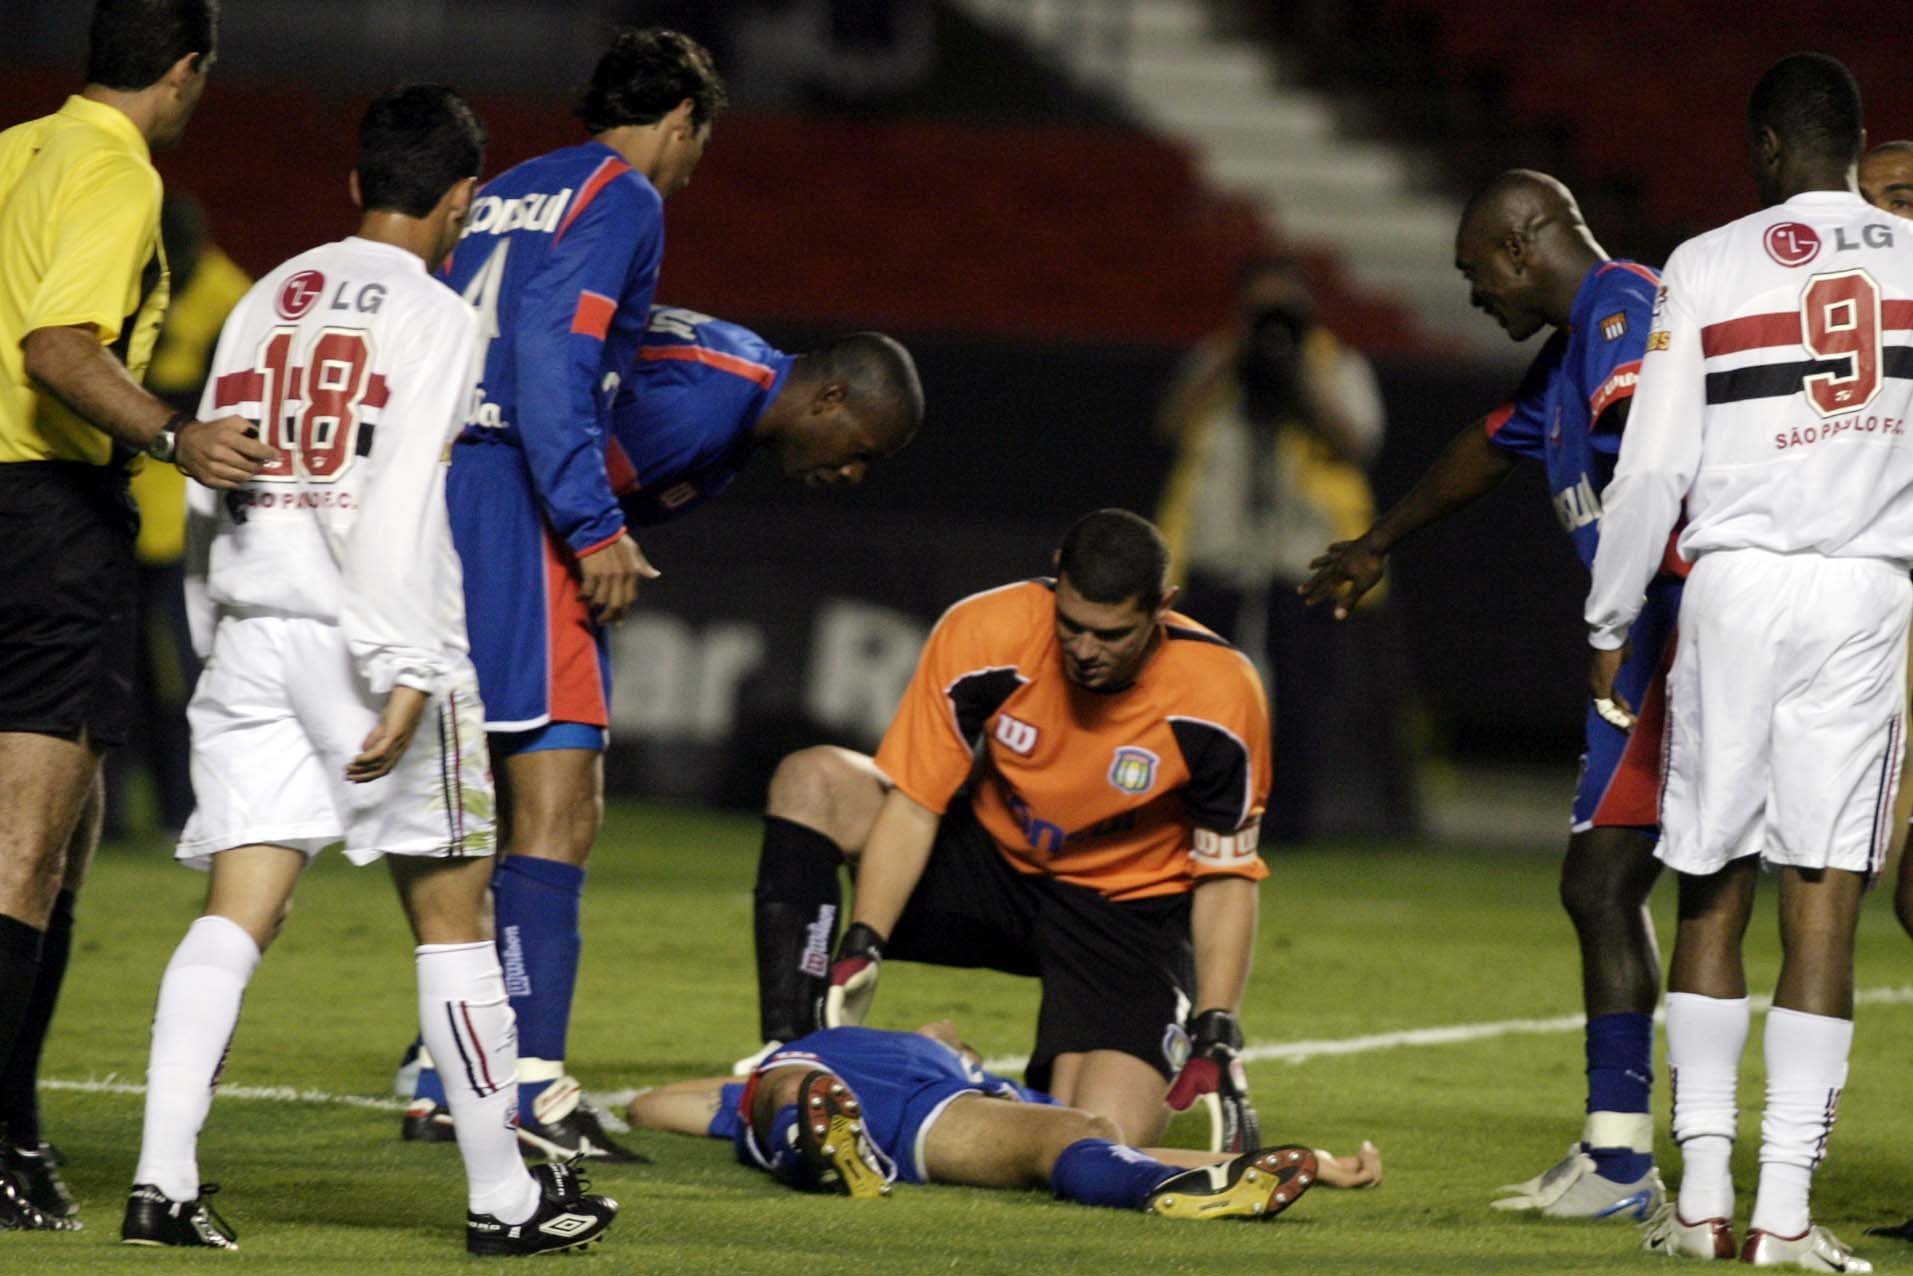 Jogador sofre parada cardíaca e desmaia em campo durante jogo do Campeonato  Inglês - Jogada - Diário do Nordeste